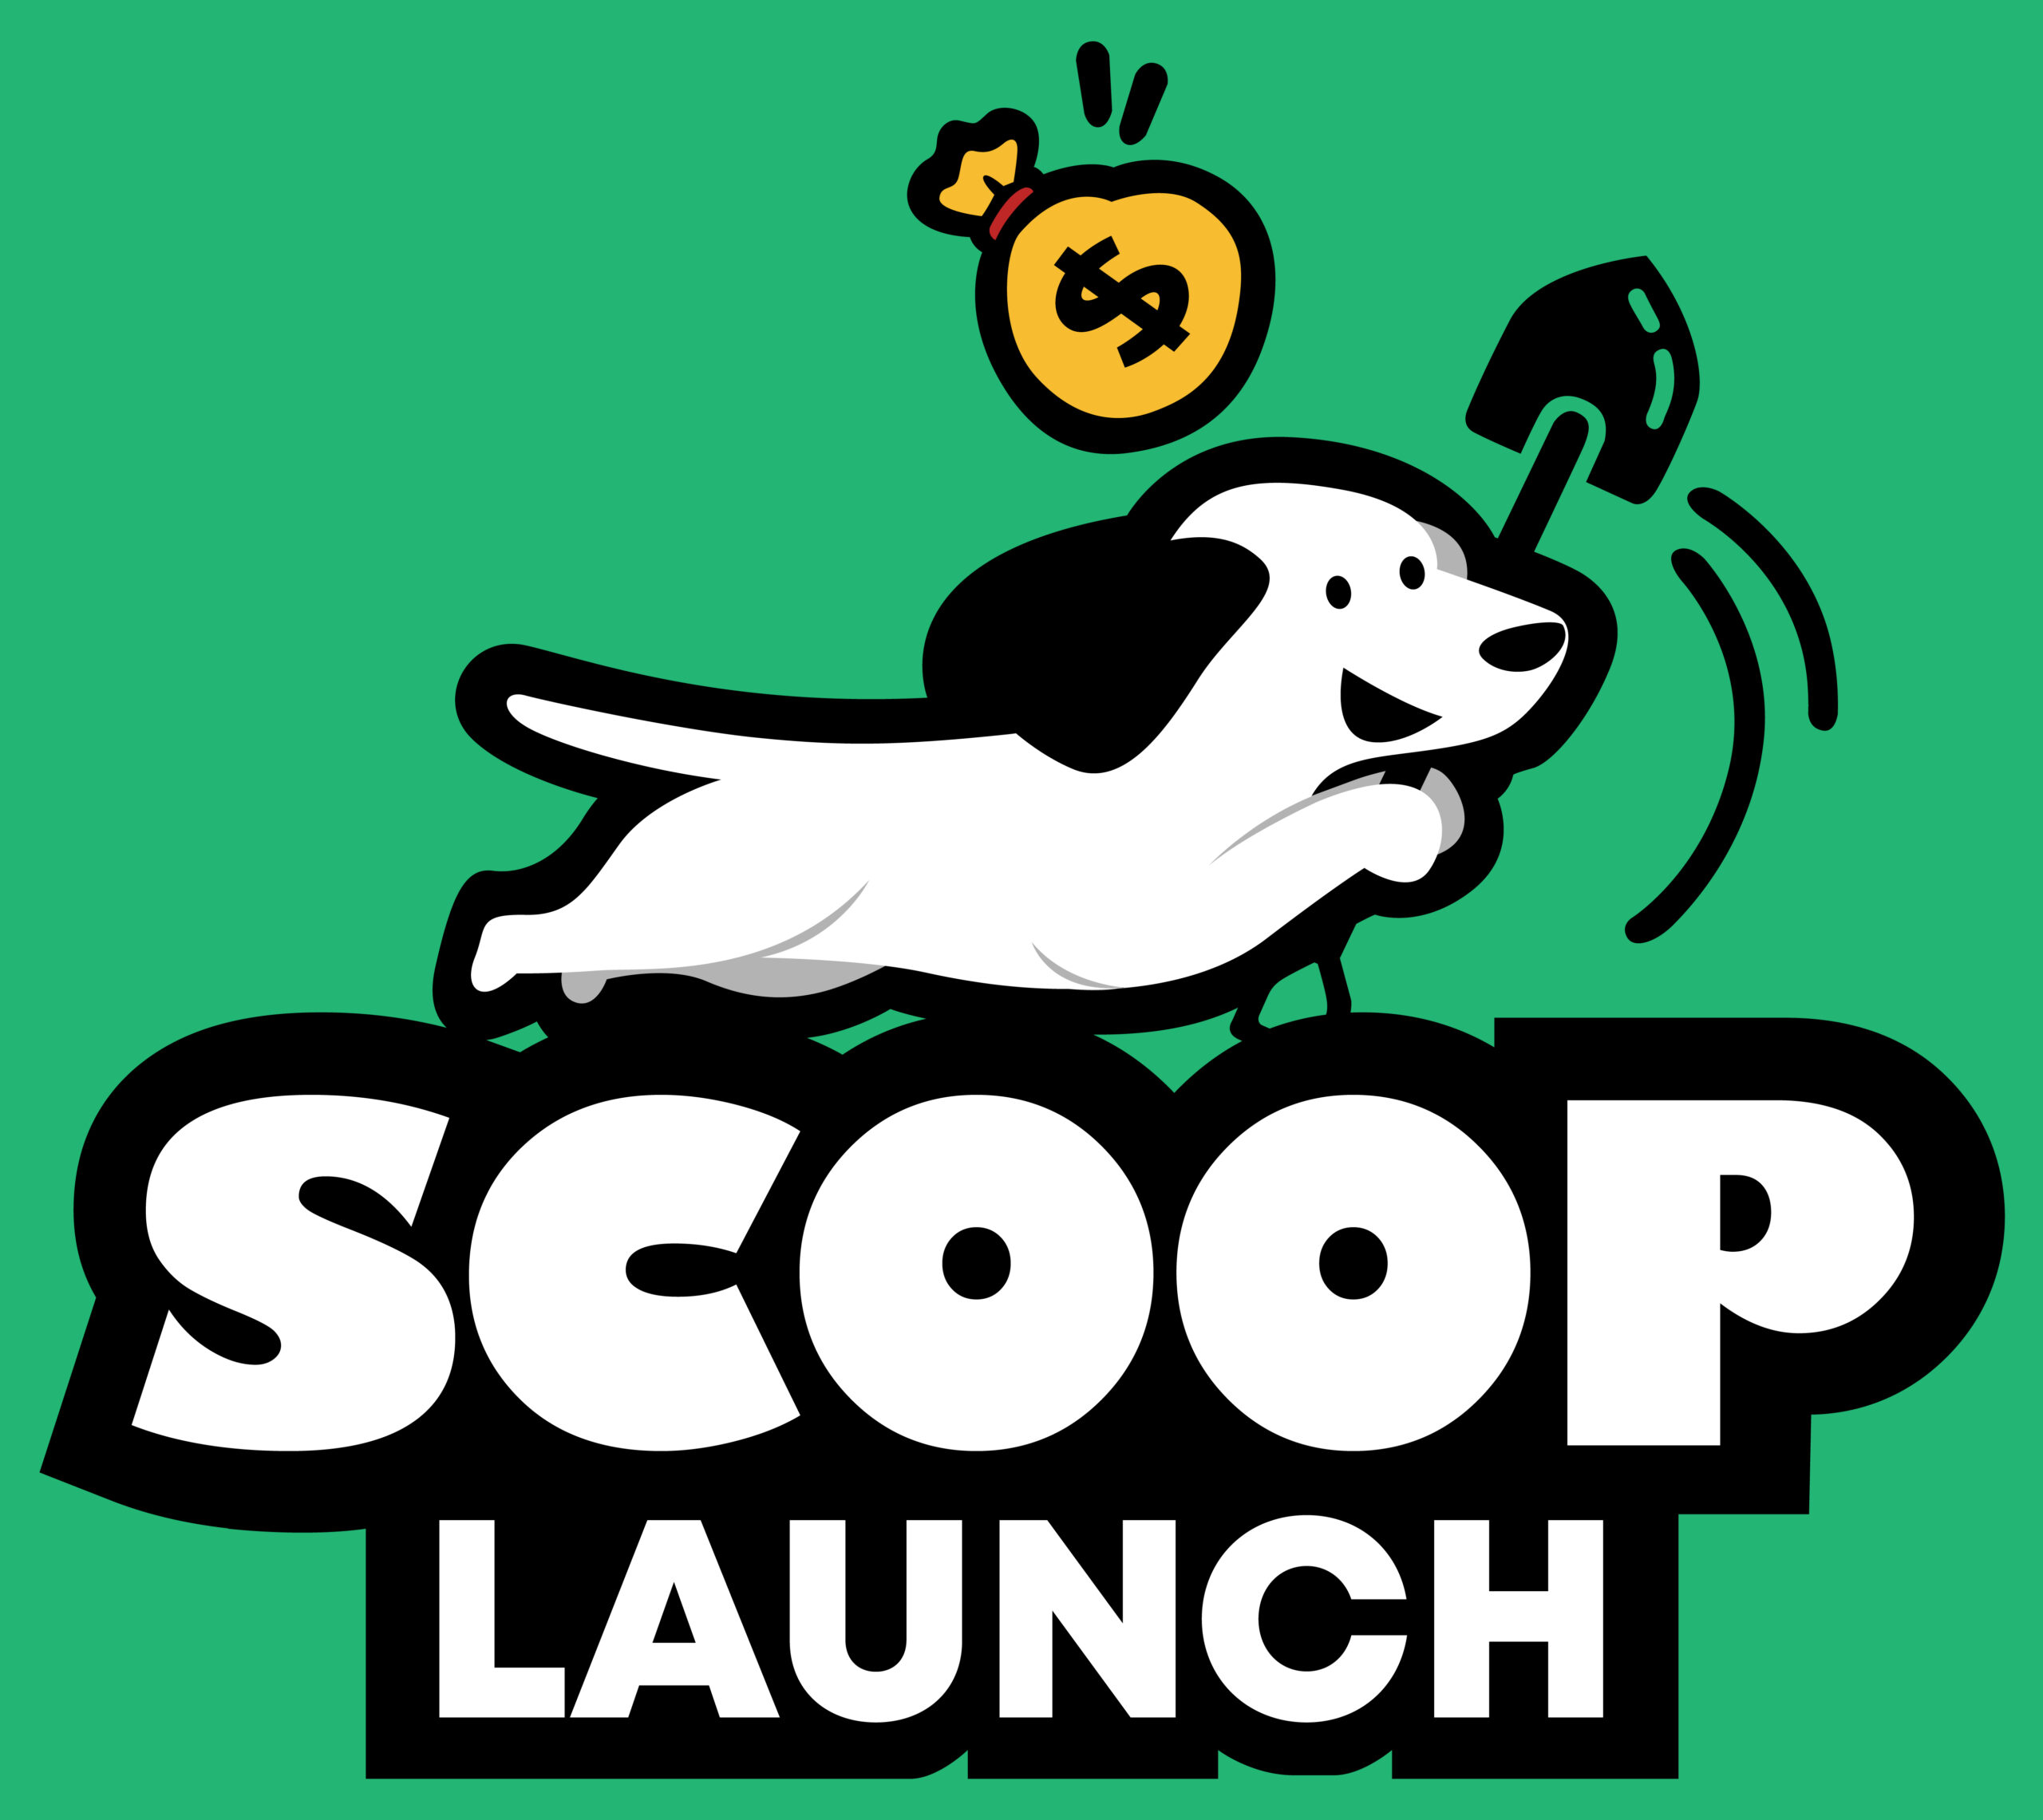 Scoop Launch